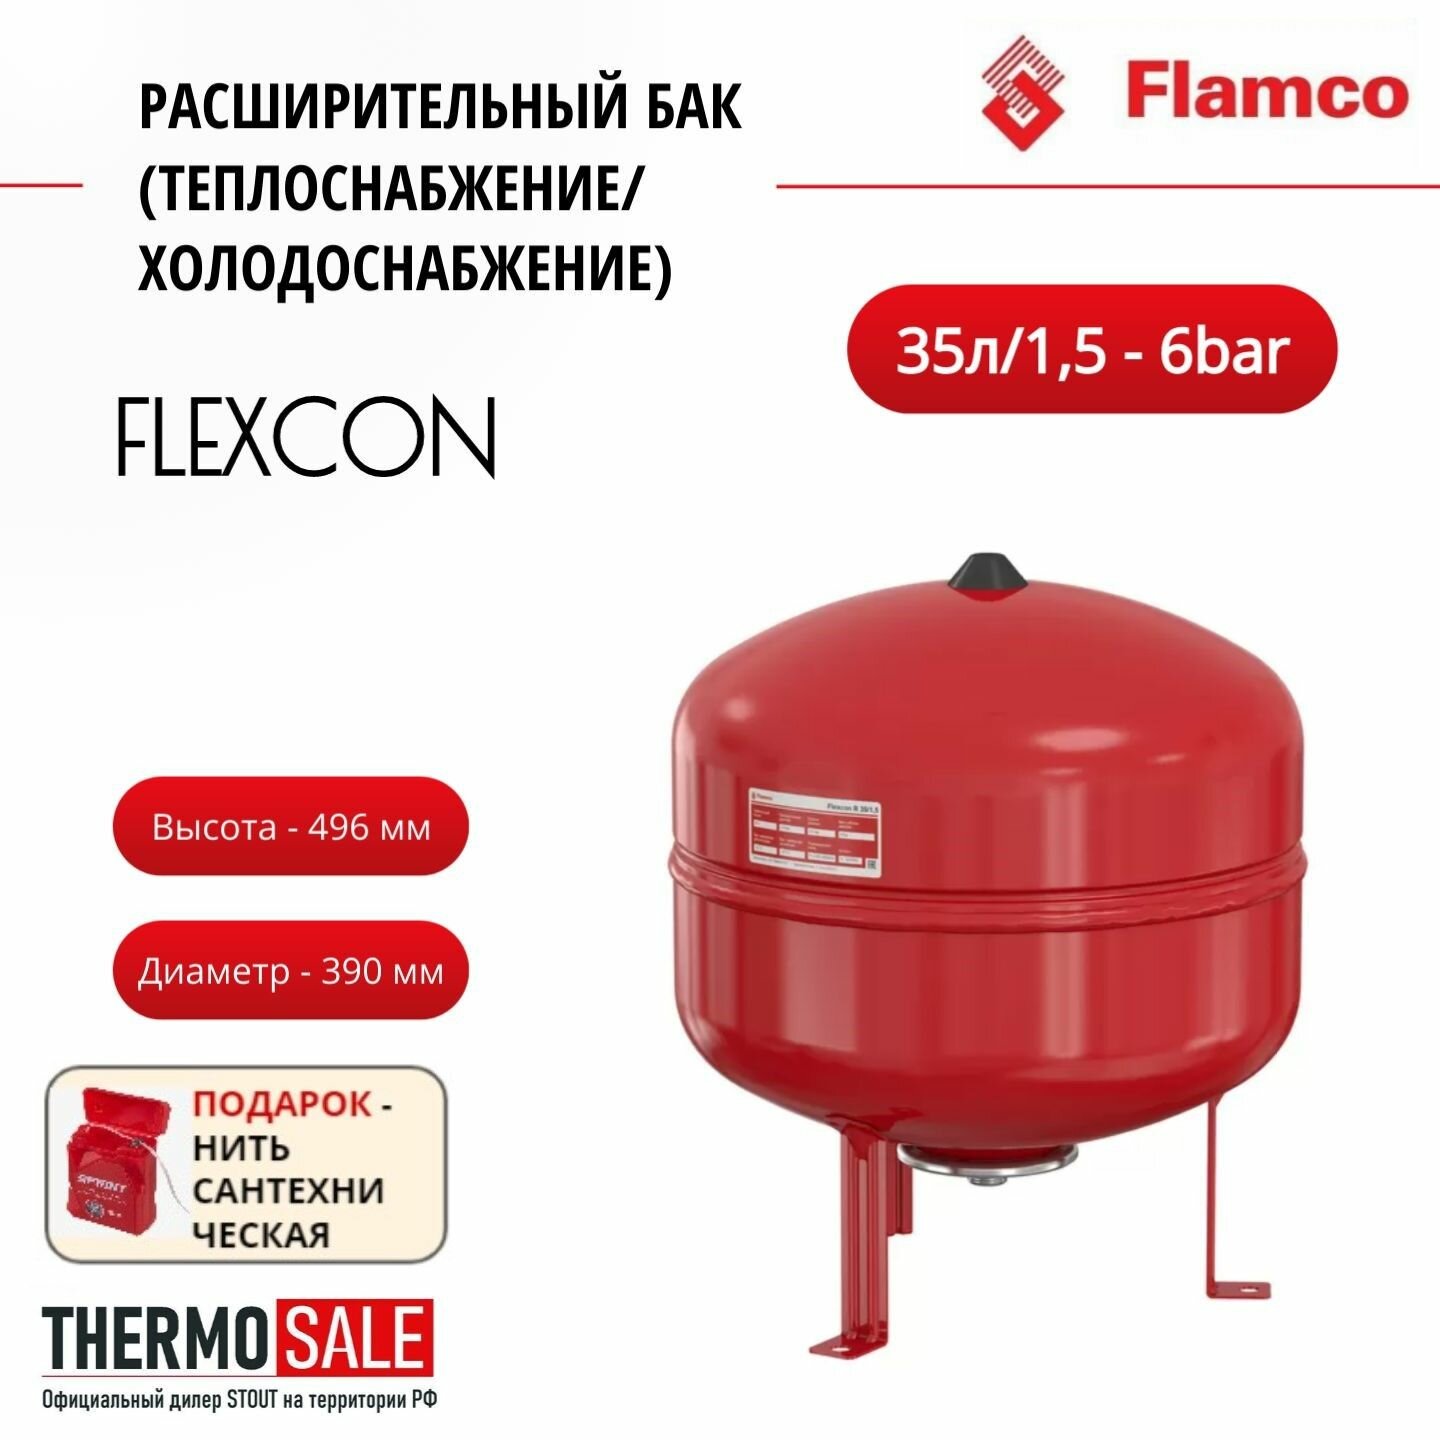 Расширительный бак (теплоснабжение/холодоснабжение) Flexcon R 35л/15 - 6bar Flamco Нить сантехническая